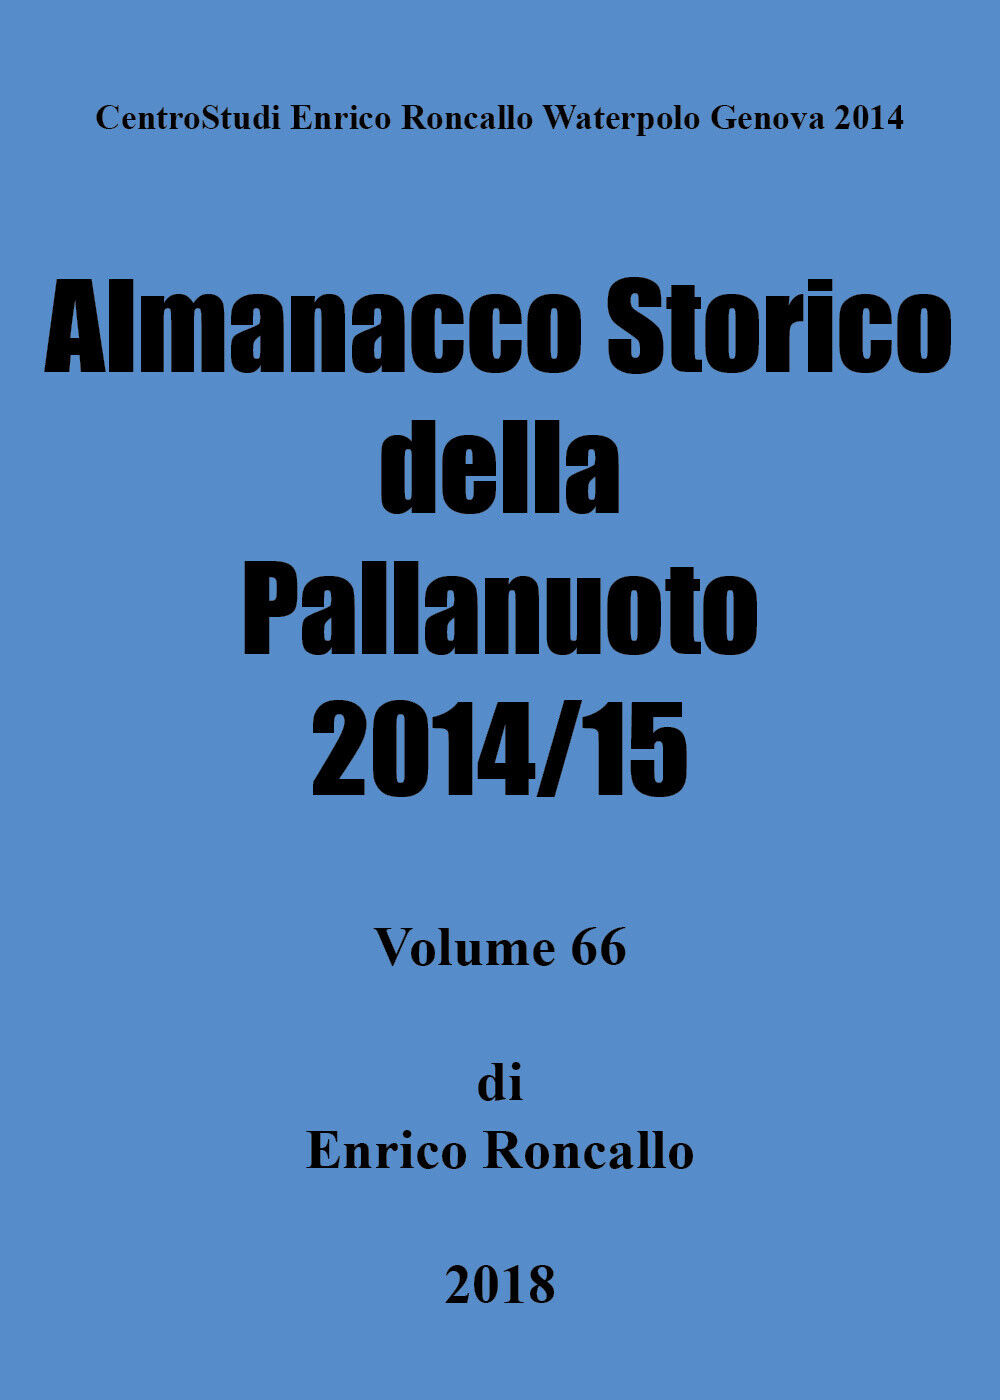 Almanacco storico della pallanuoto 2014/15 - Enrico Roncallo,  2018